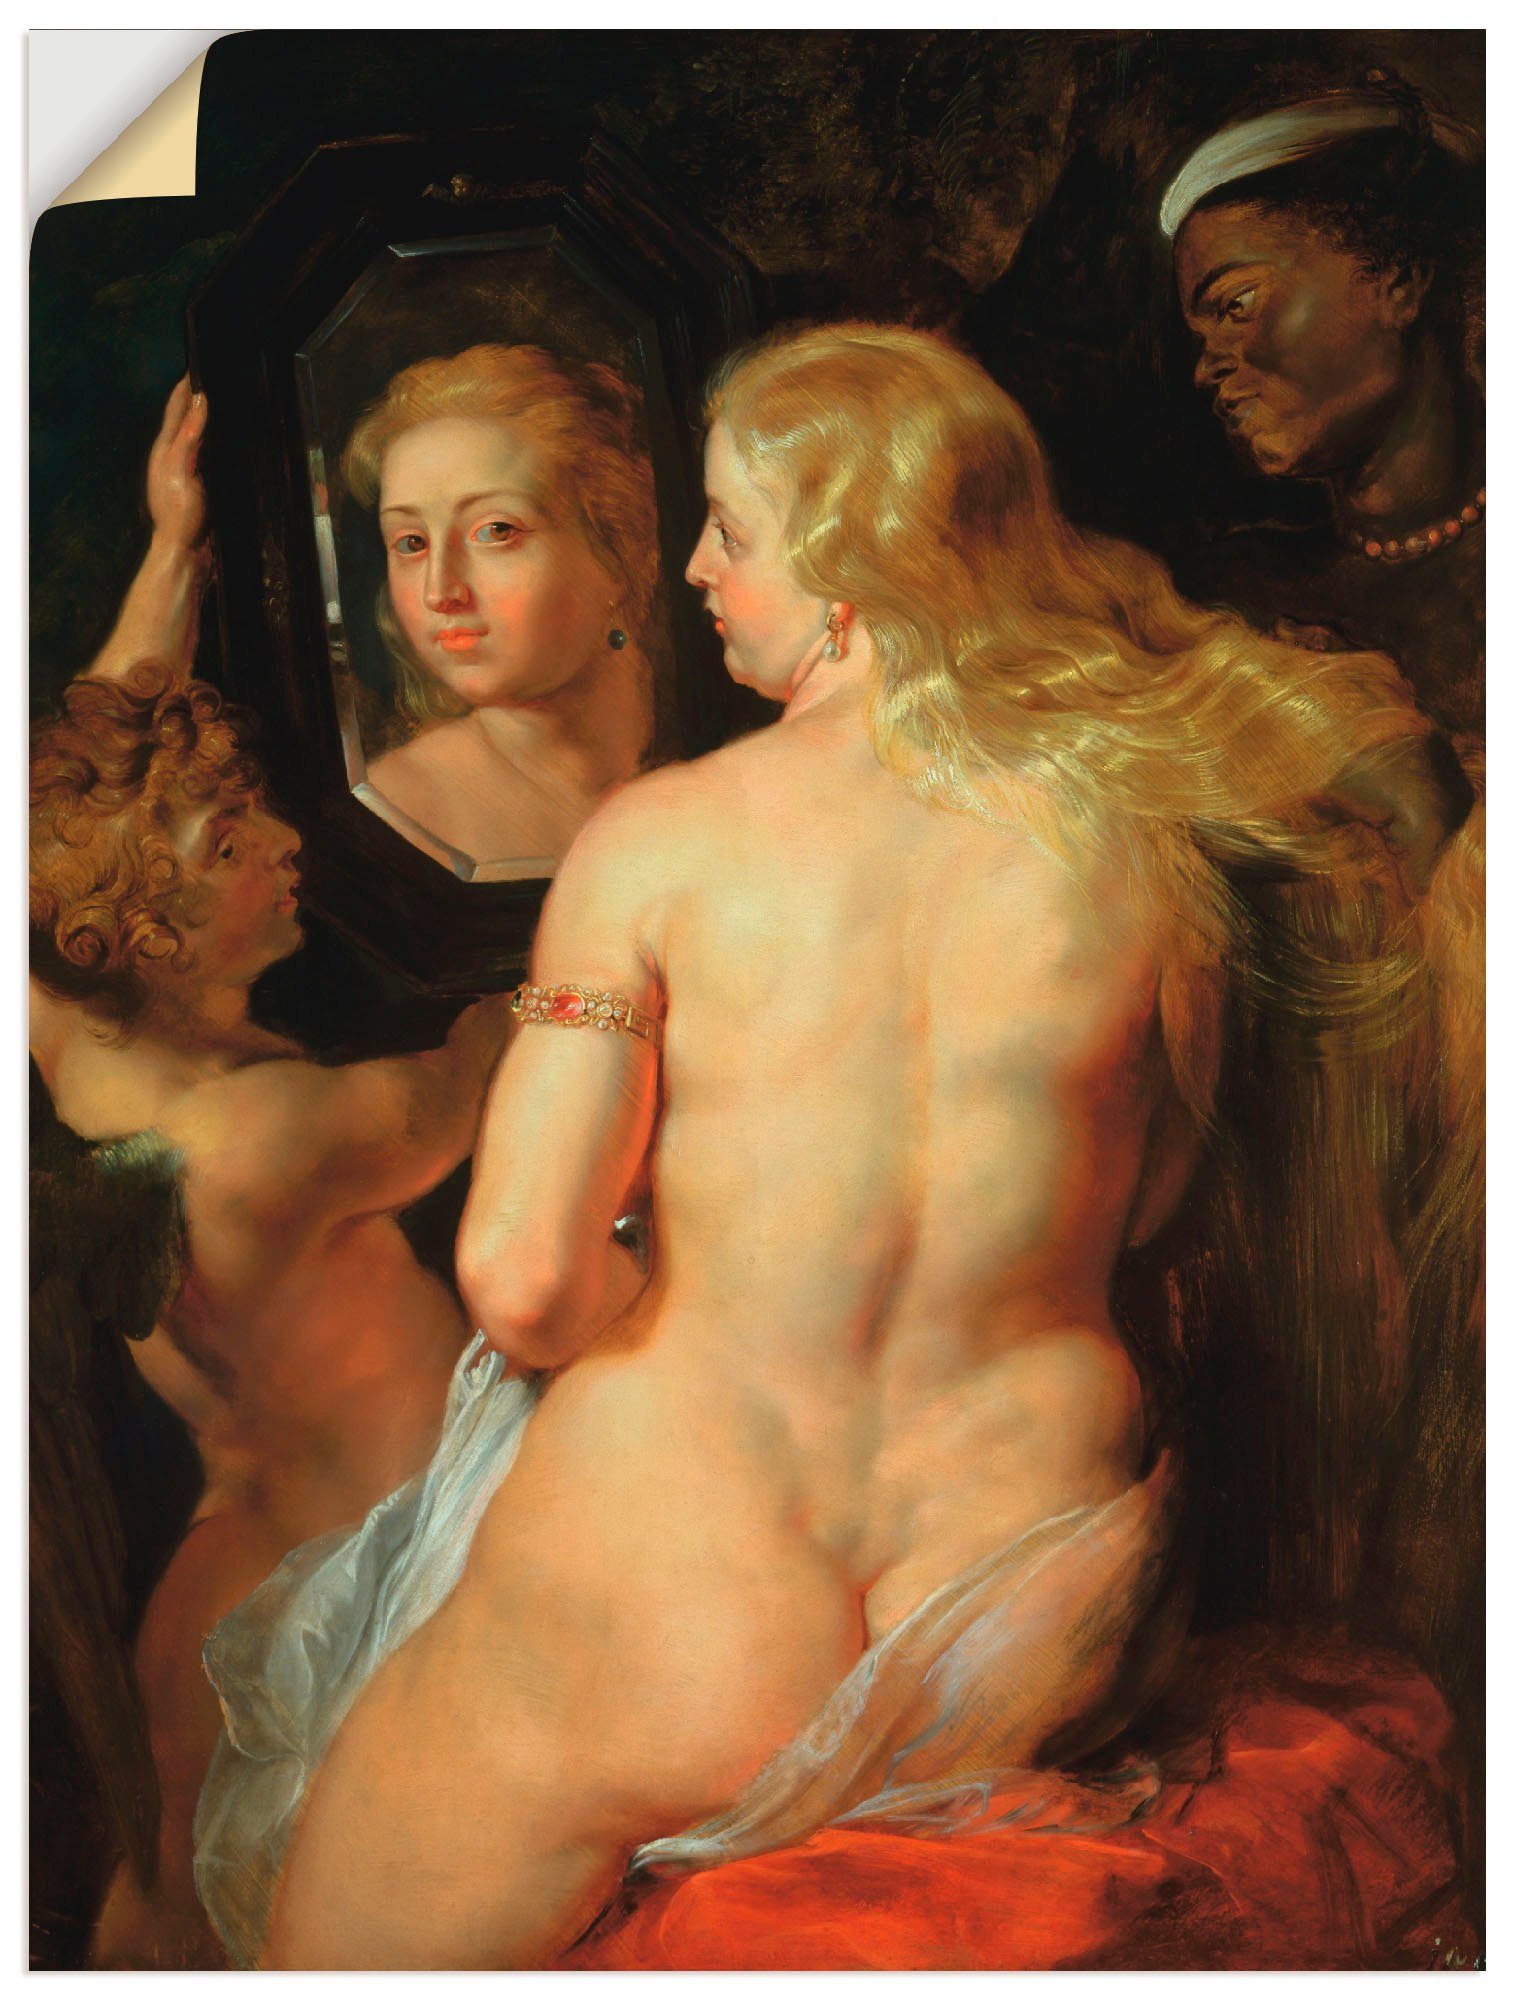 oder Größen als Wandaufkleber in Frau der Toilette Poster (1 Leinwandbild, Venus, Artland Wandbild St), versch.